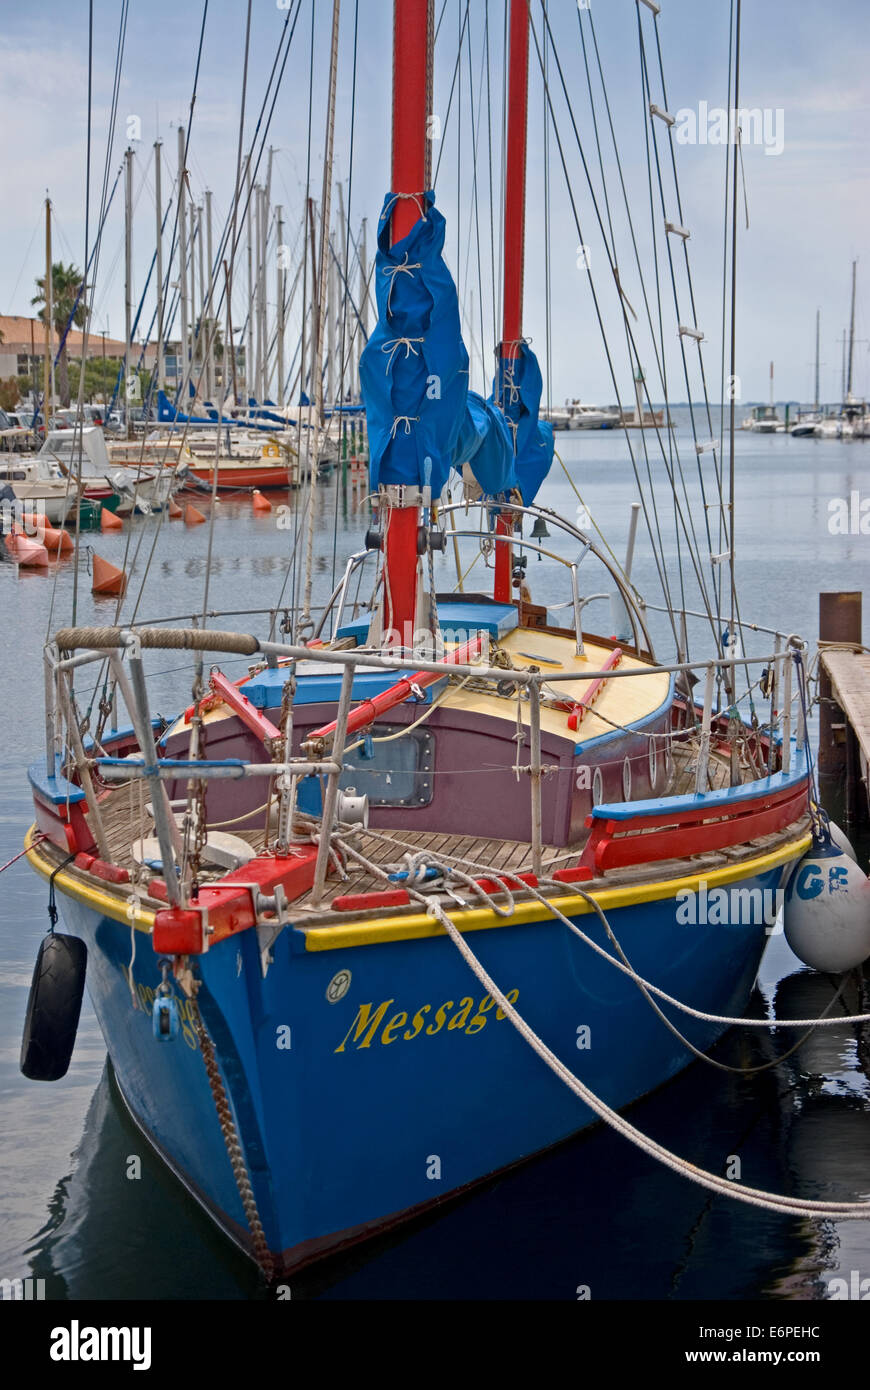 Couleur traditionnel bateau à voile amarré à quai dans le petit port de Meze, sur le bassin de Thau dans le sud de la France. Banque D'Images